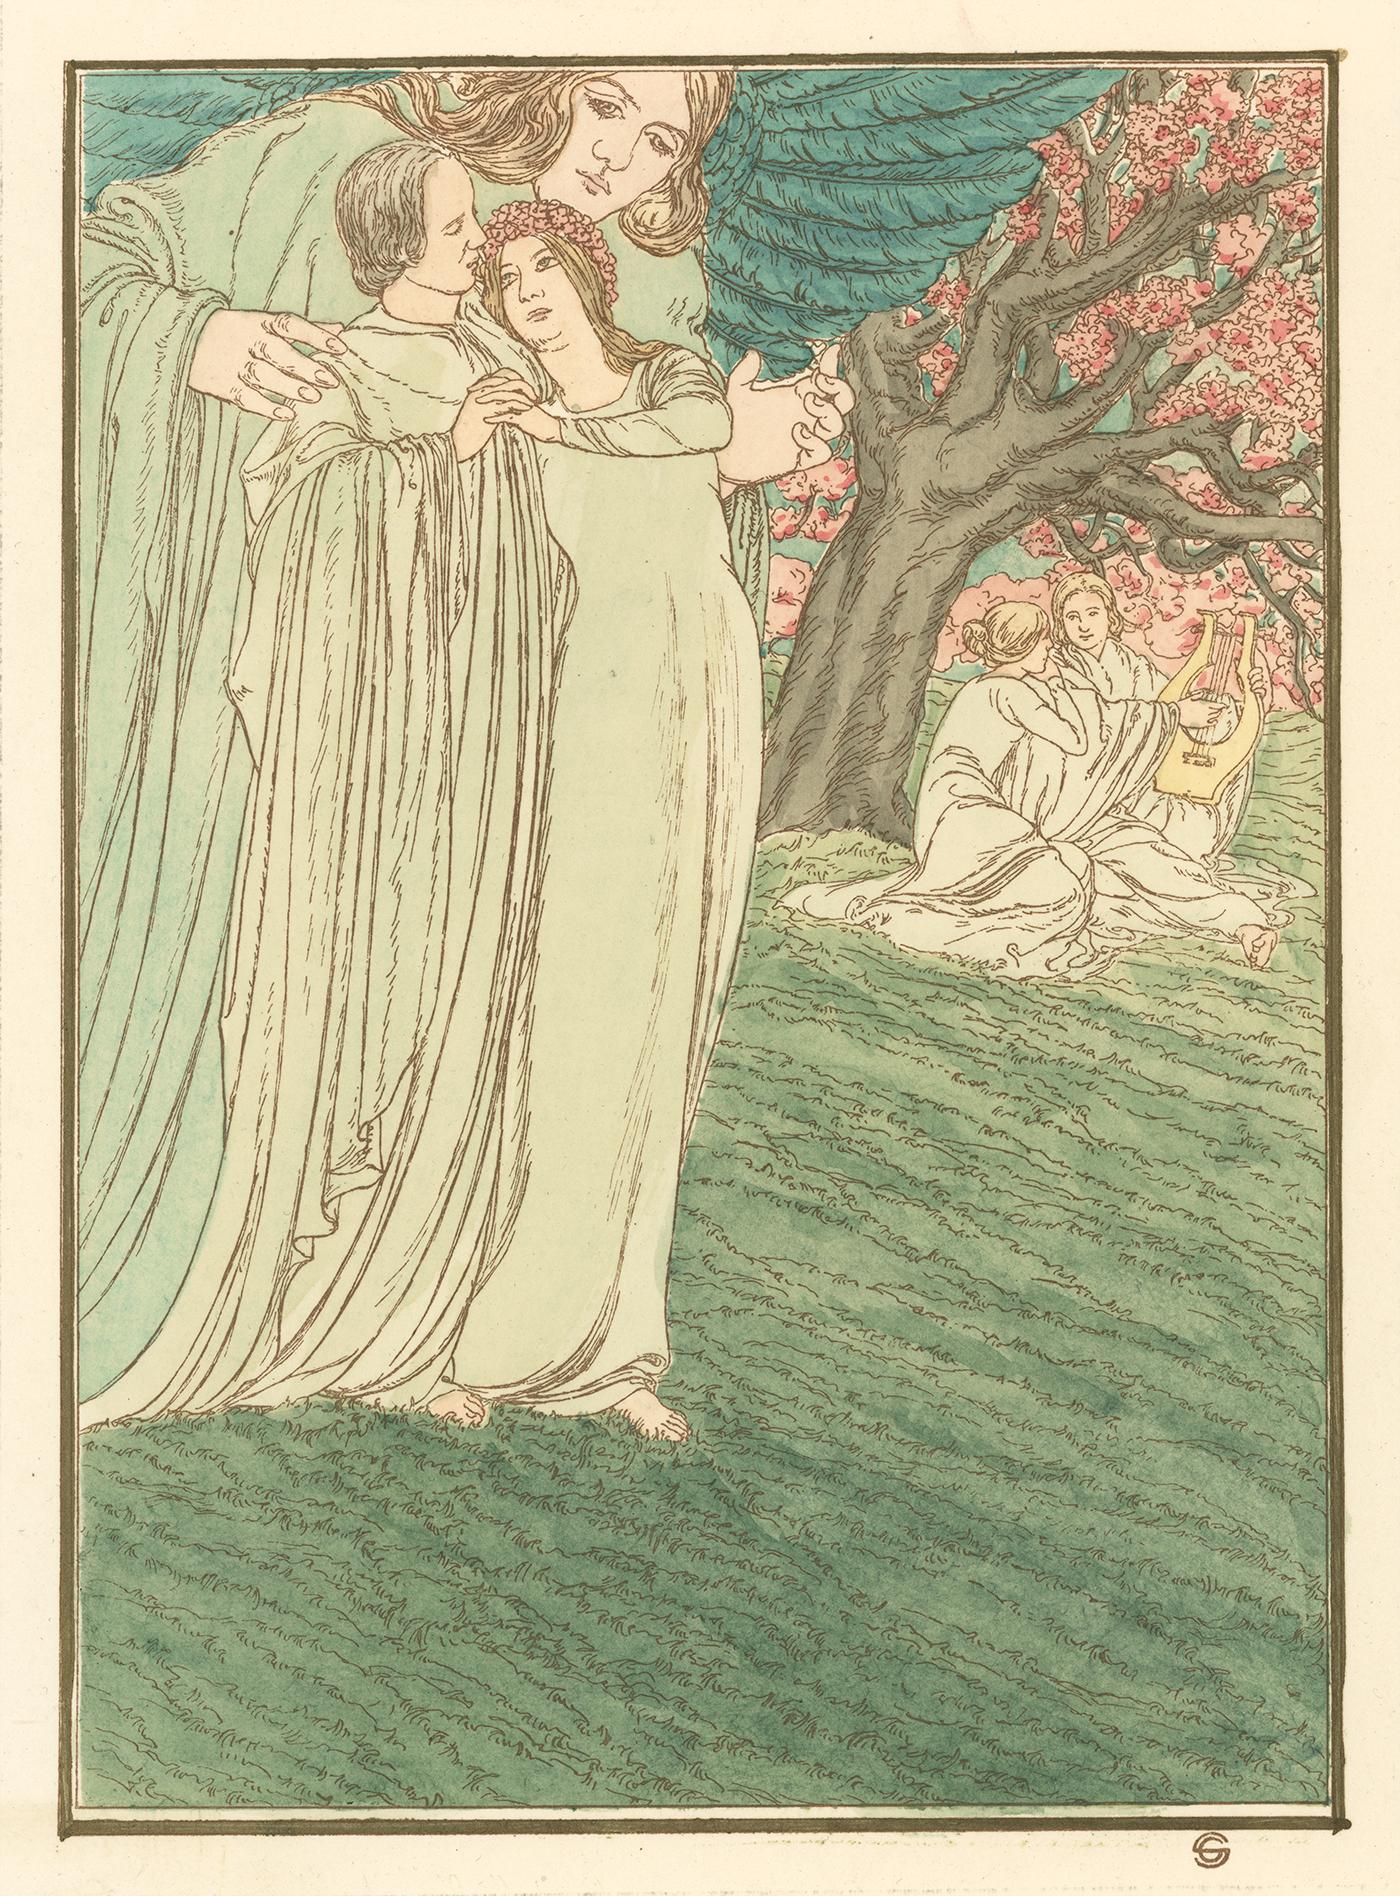 Illustration für Hésperus von Carlos Schwabe, symbolistisches Fantasieaquarell, 1904